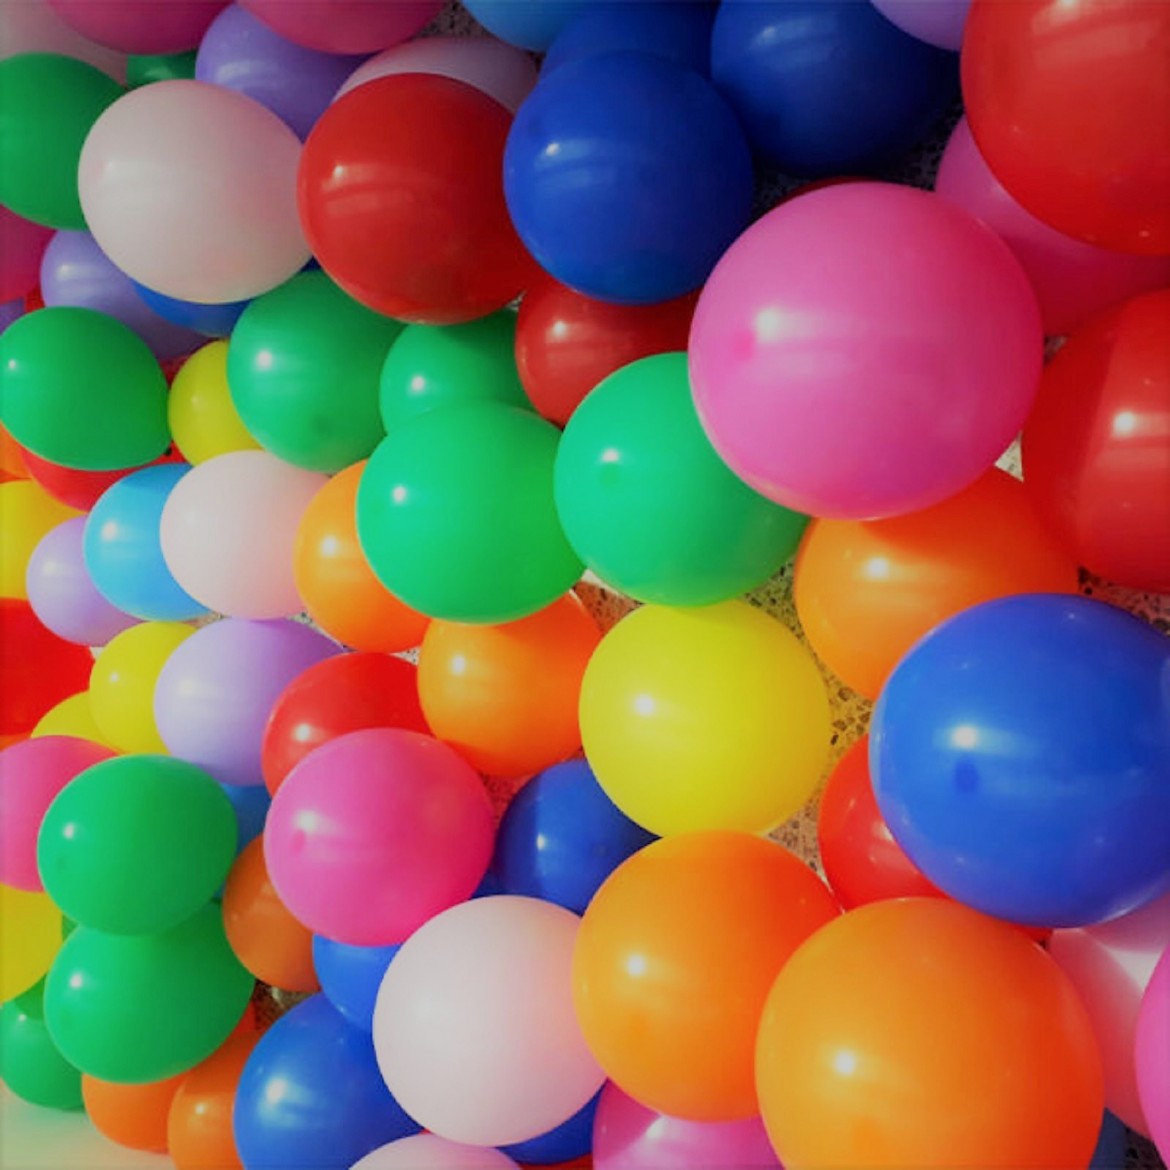 шары надувные на день рождения фото